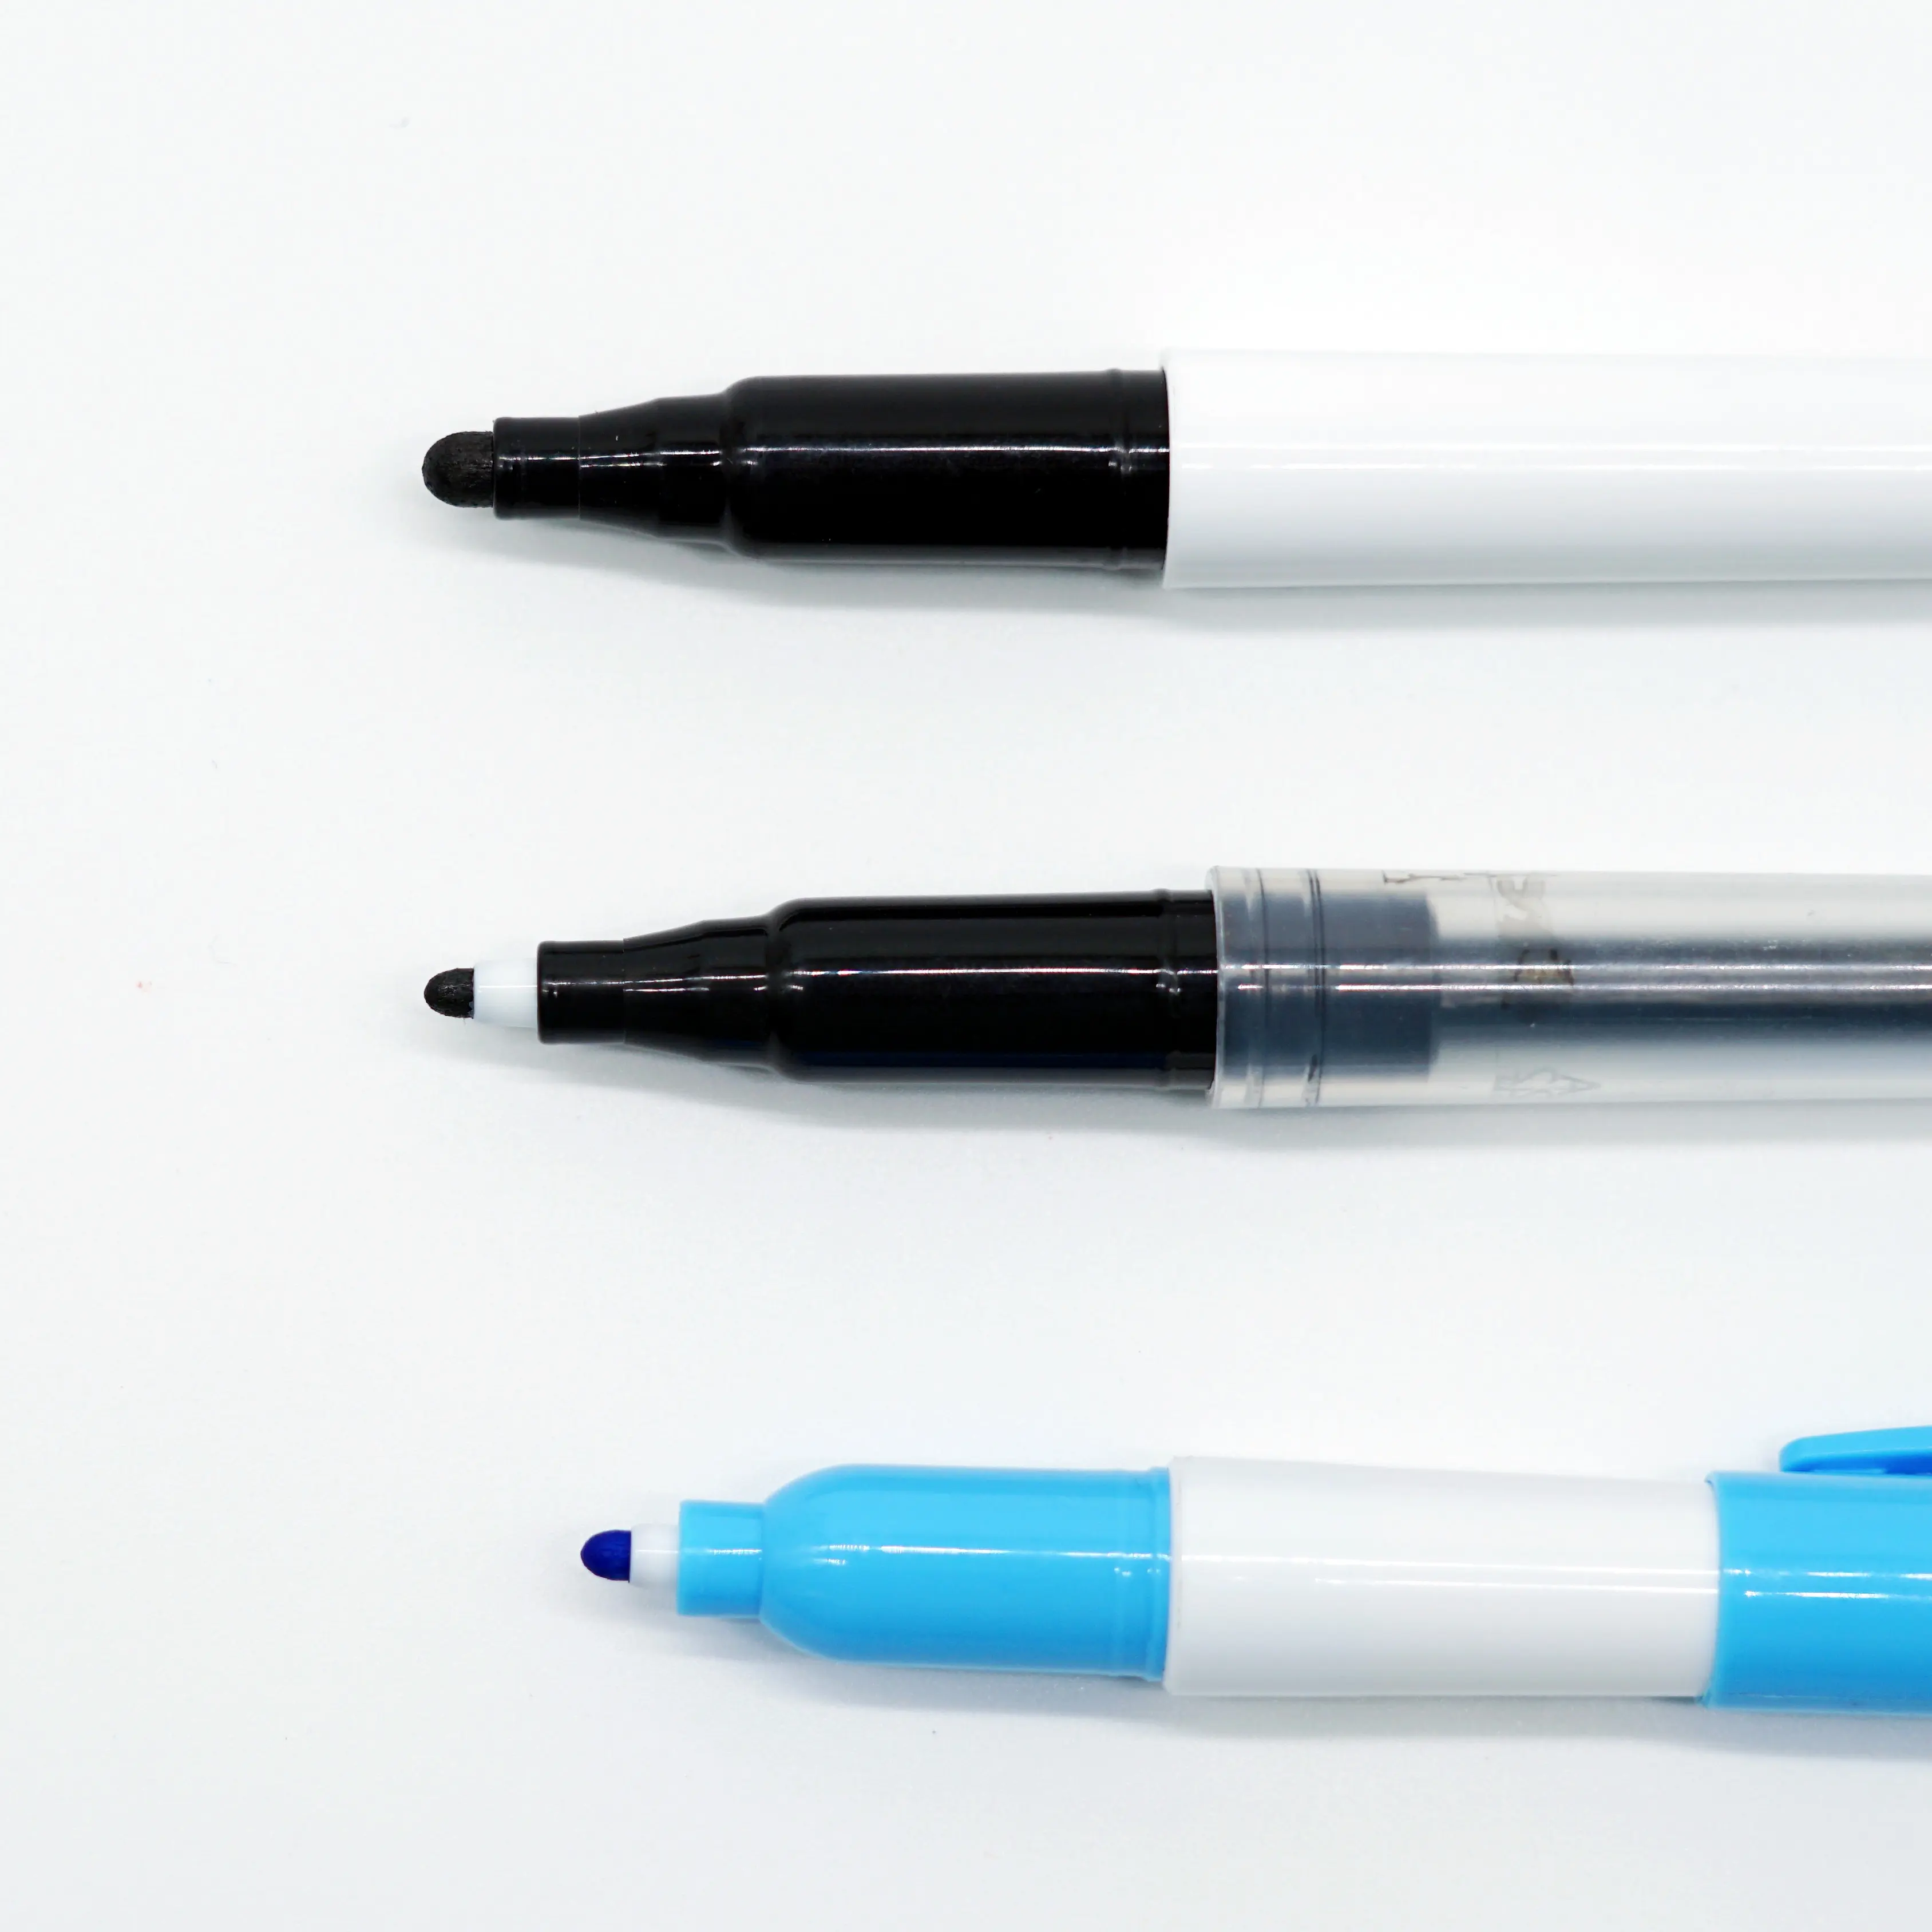 ปลายปากกาลายจุดไม่เปื้อนแห้งเร็วสามารถวาดเส้นที่มีความหนาต่างกันปากกาสีน้ำสำหรับเด็กและผู้ใหญ่